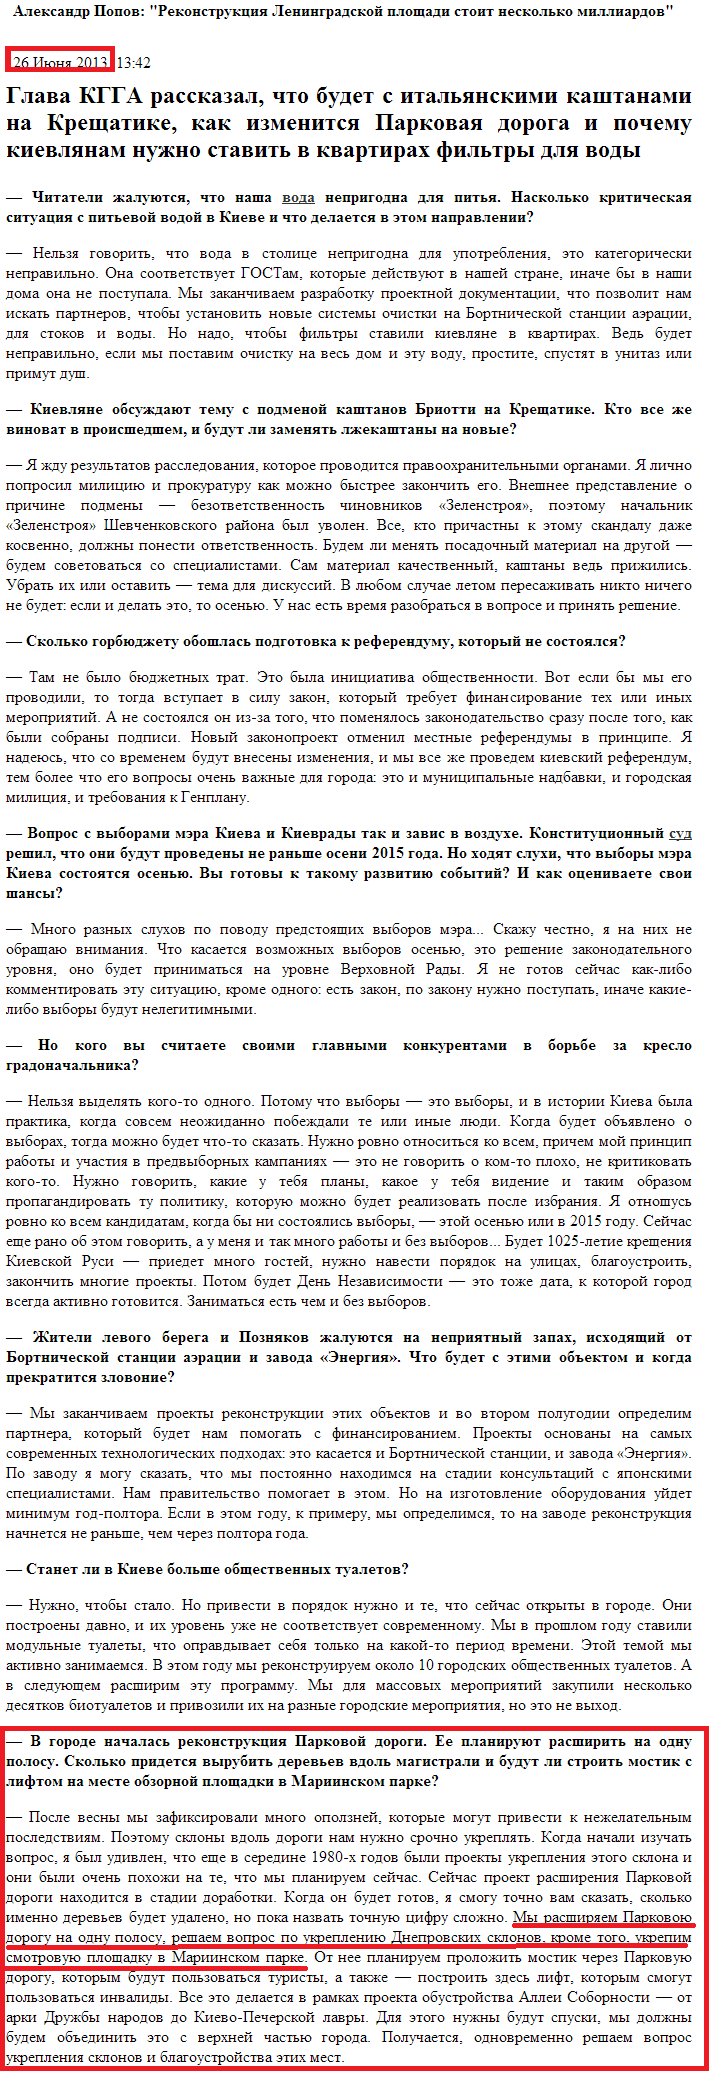 http://kiev.segodnya.ua/kpower/Aleksandr-Popov-Rekonstrukciyu-prospekta-Pobedy-zakonchim-v-sleduyushchem-godu-444468.html